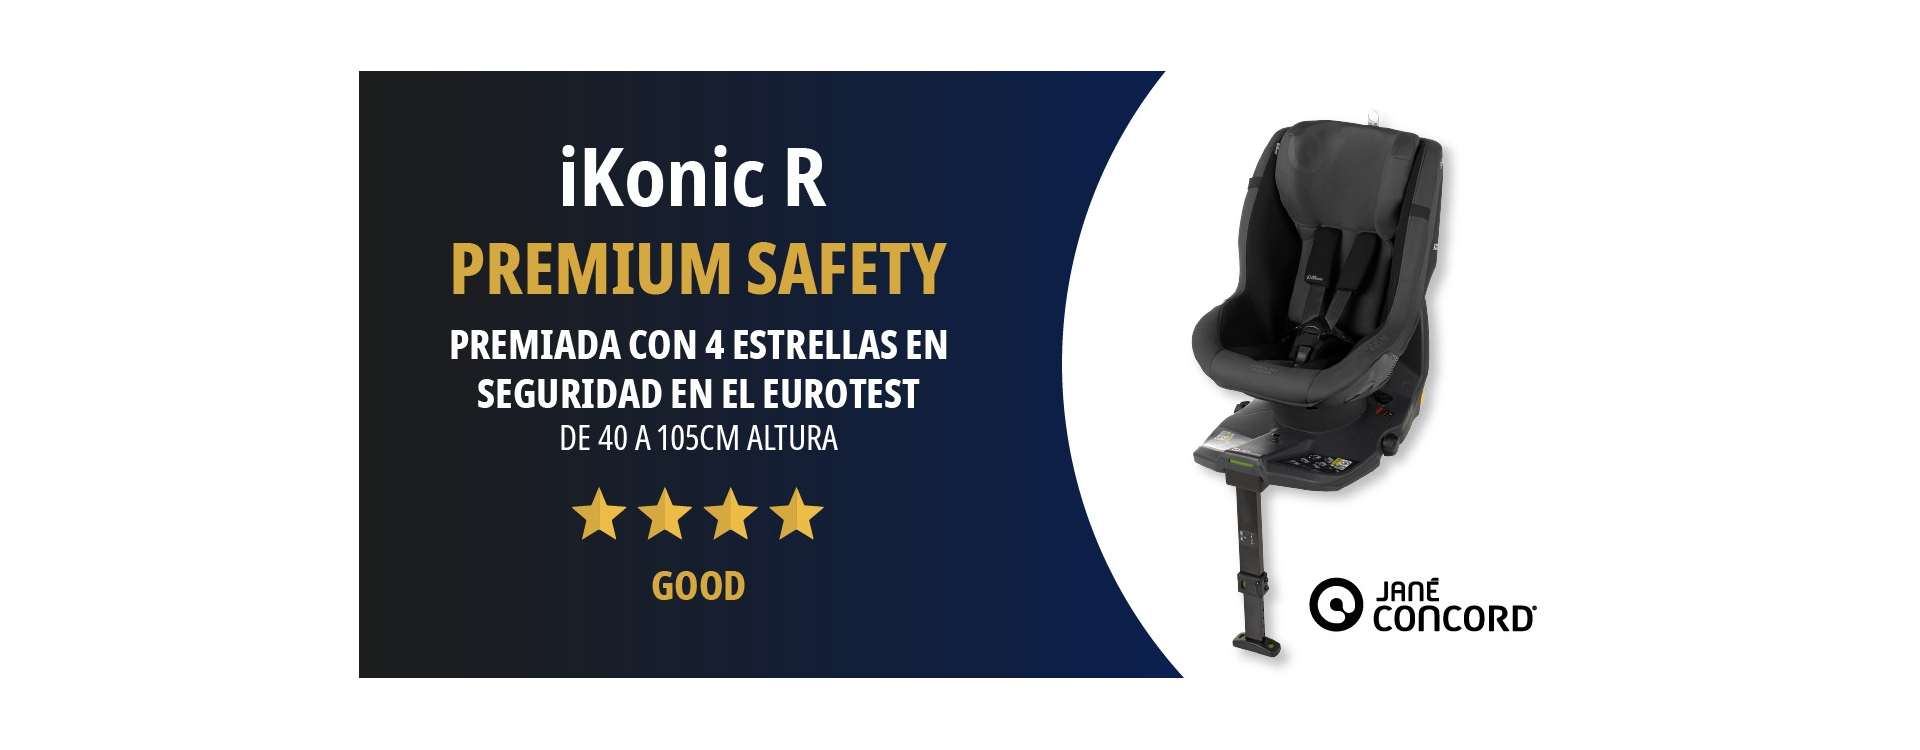 iKonic R premiada con 4 estrellas en seguridad en el Eurotest 2023